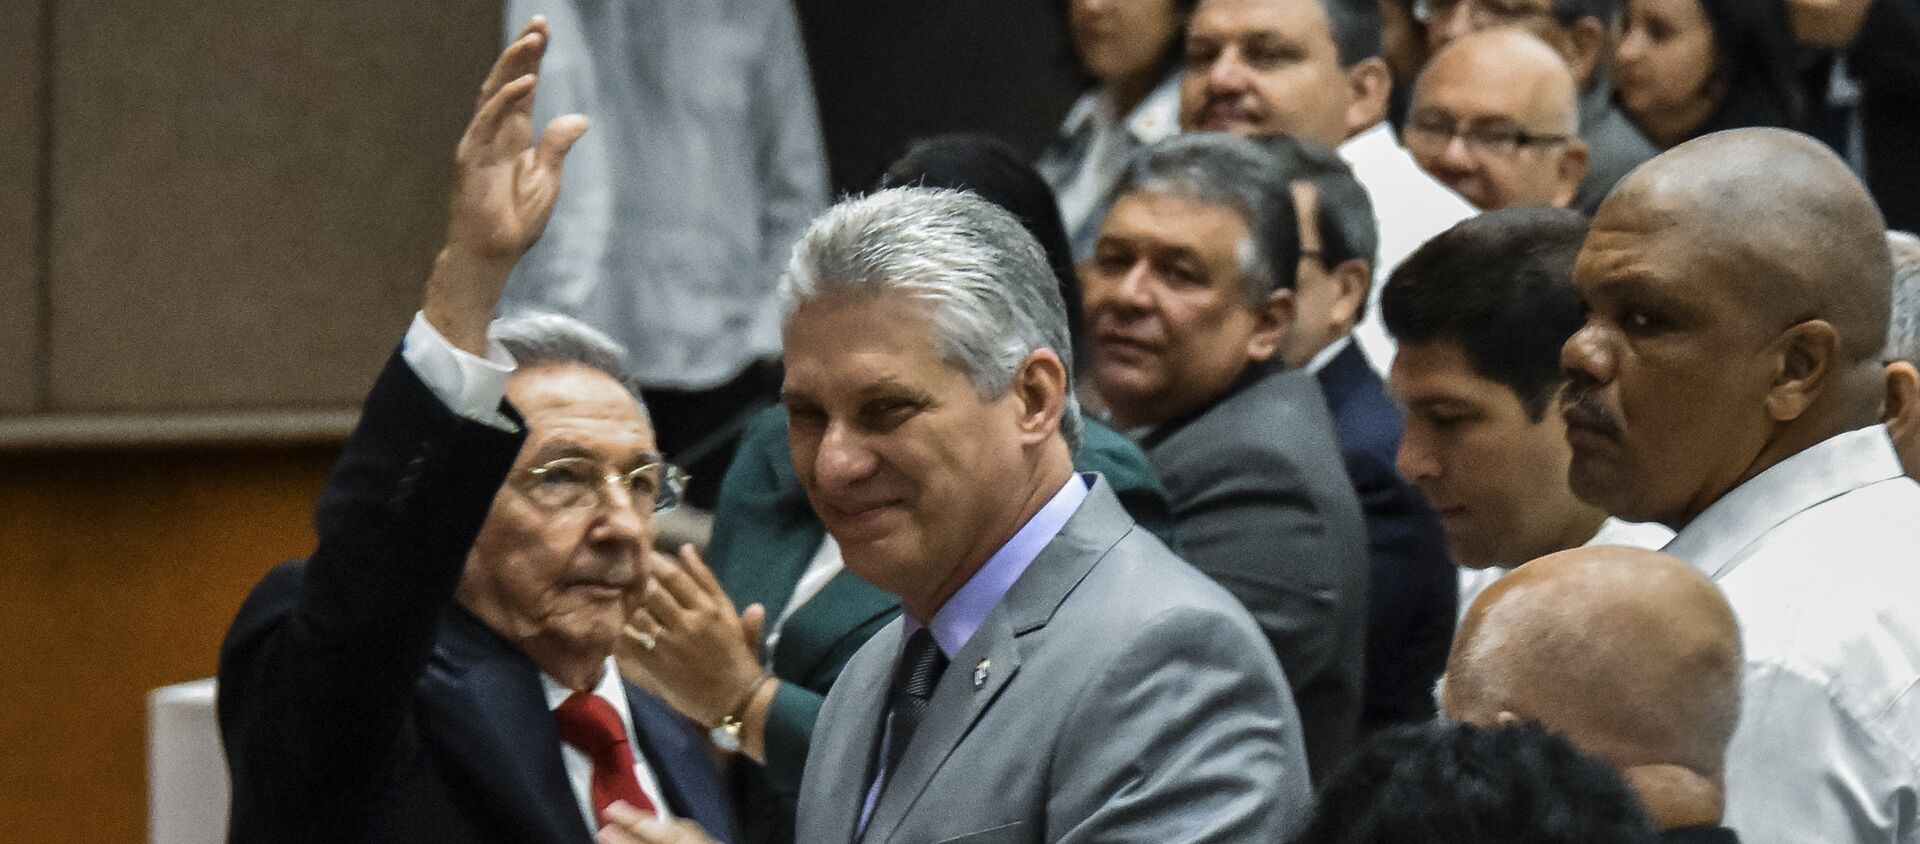 Küba Ulusal Meclisi, devlet başkanlığını bırakan Raul Castro'nun yerine tek aday gösterdiği yardımcısı Miguel Diaz-Canel'i seçti. - Sputnik Türkiye, 1920, 16.04.2021